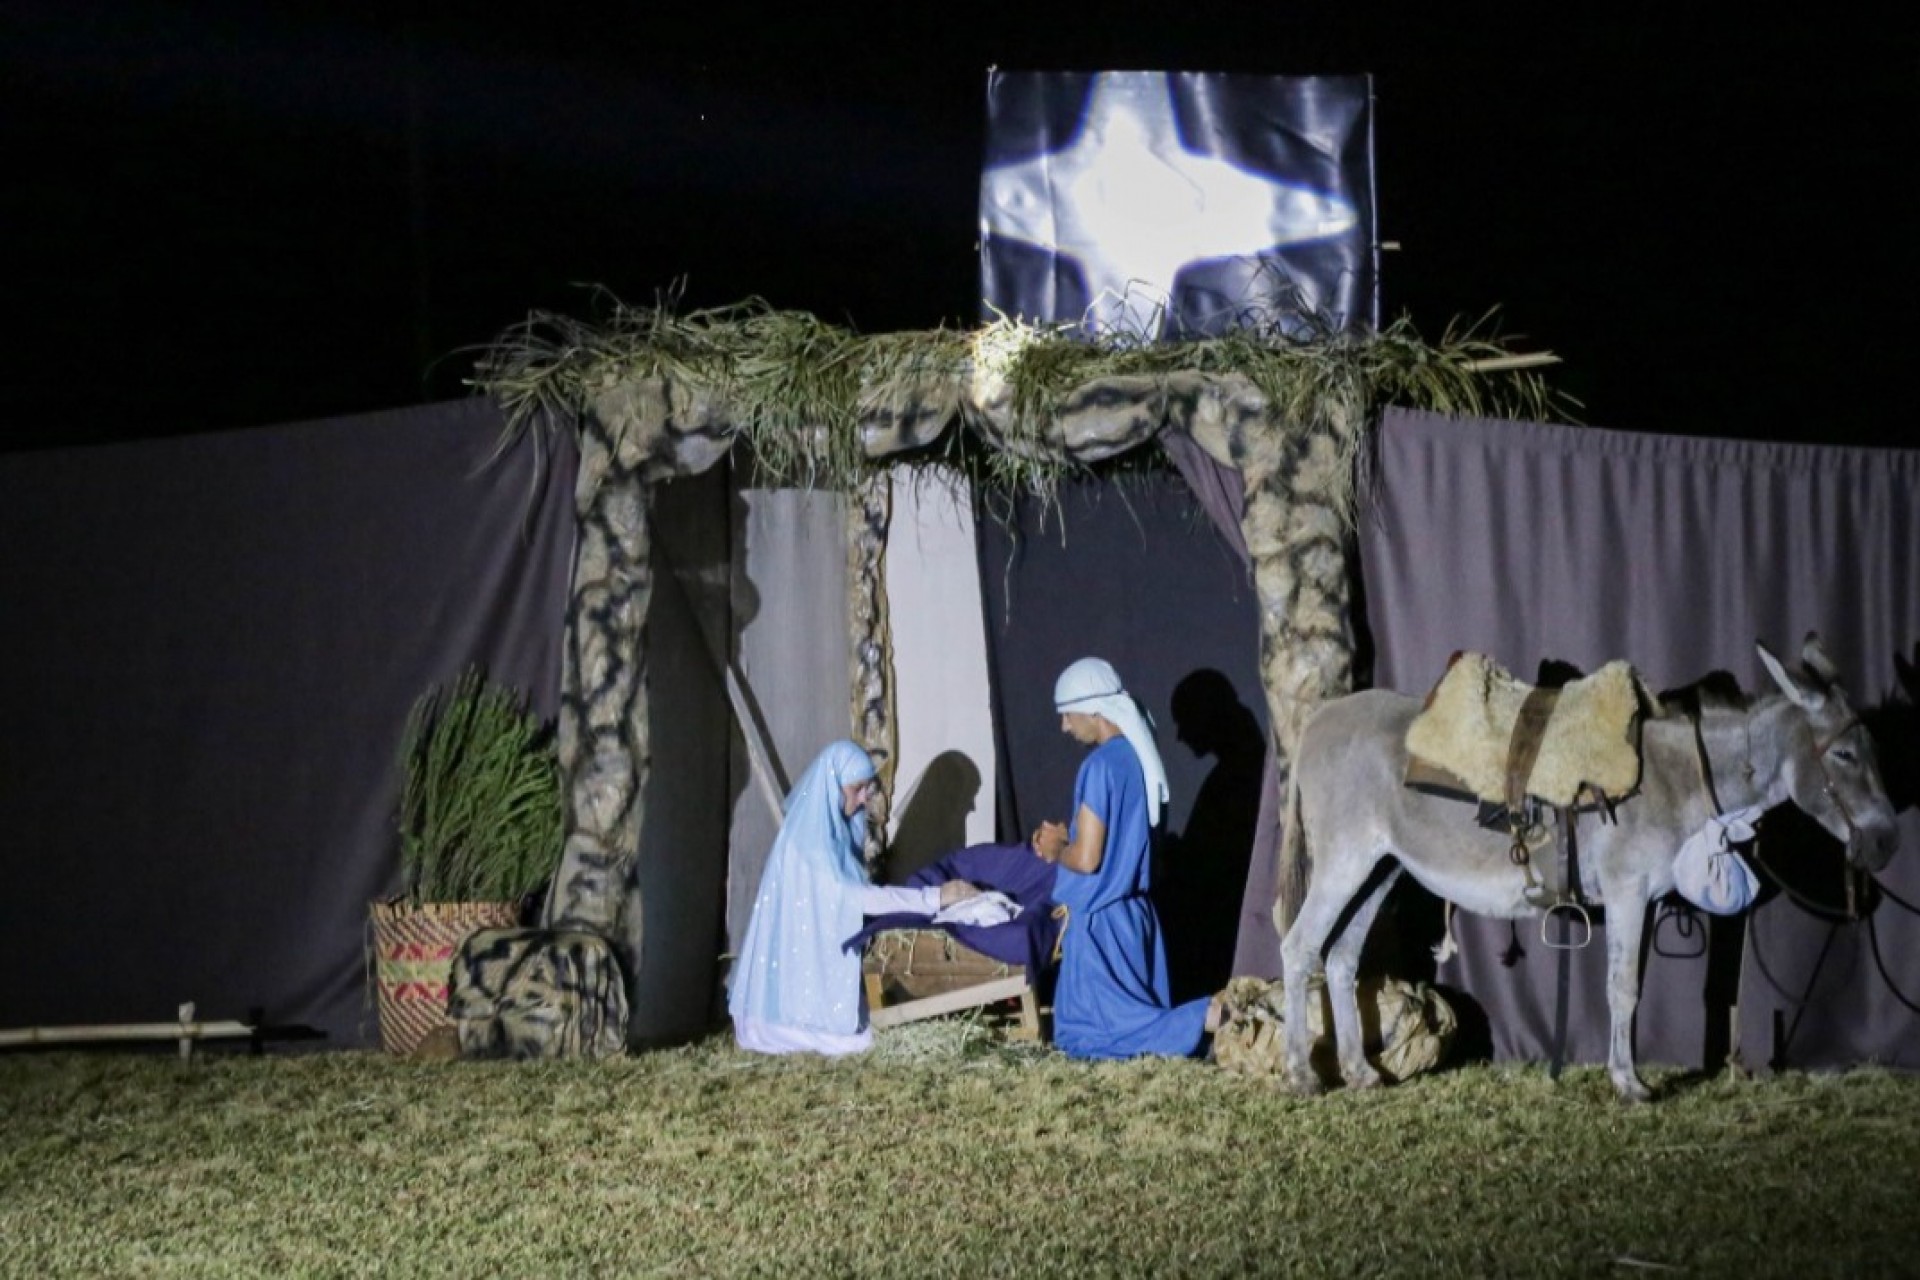 Auto de Natal em Missal: Estrutura já está sendo montada para apresentação em Portão Ocoí no dia 22